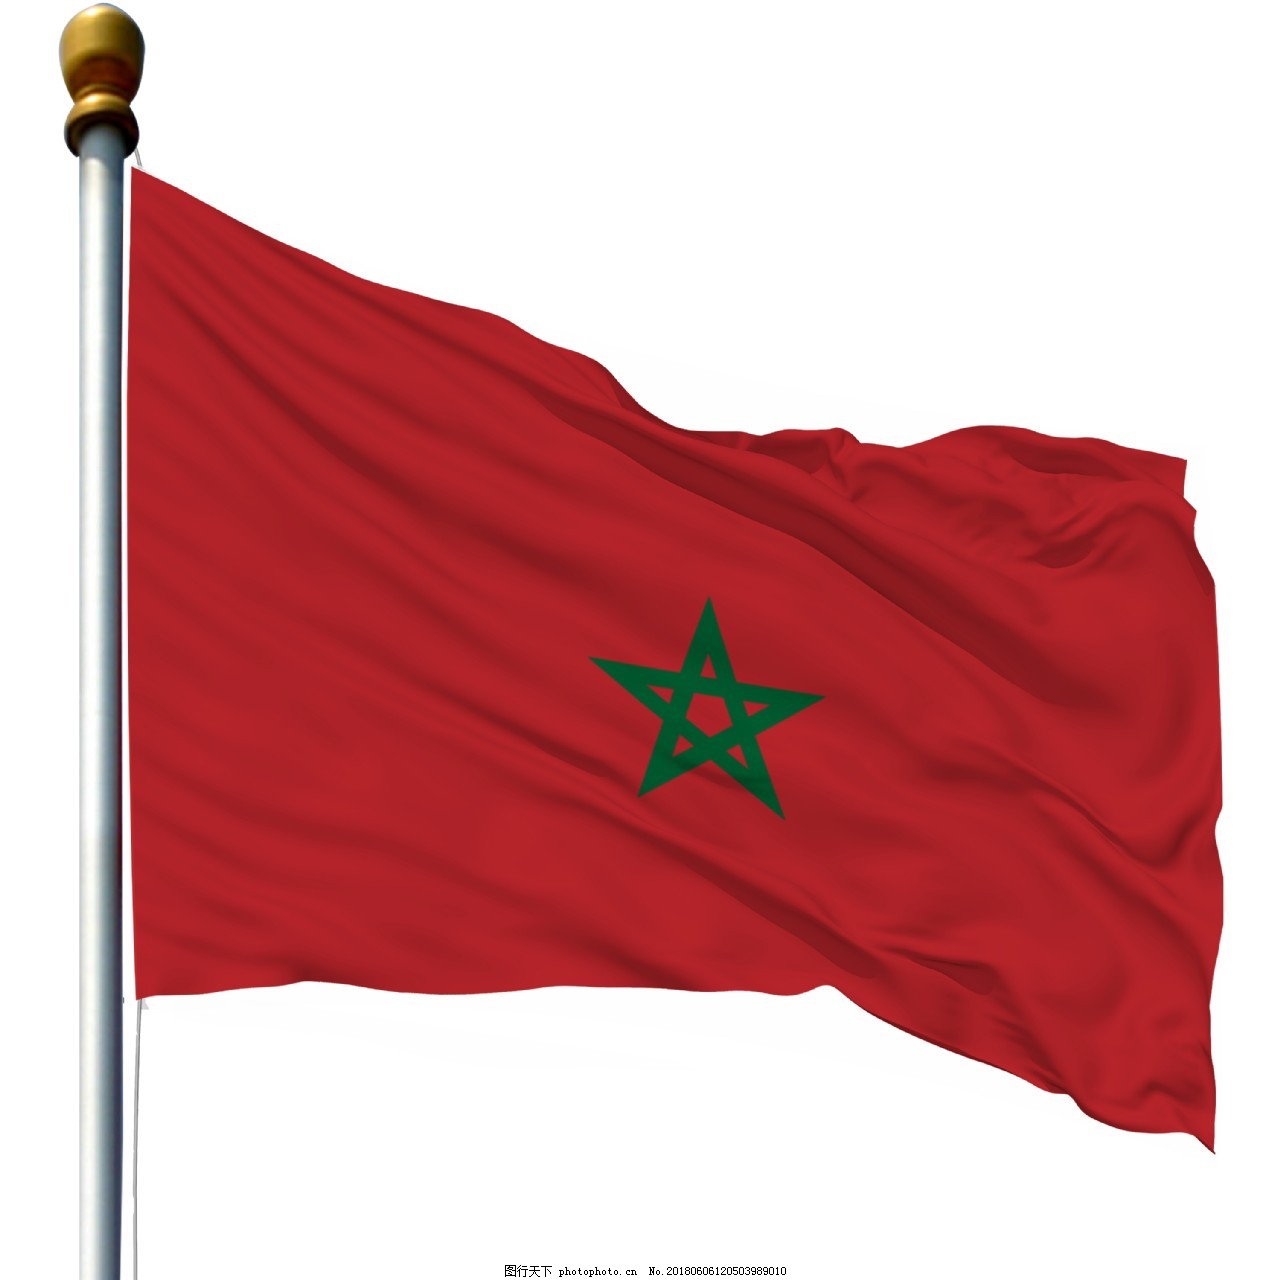 摩洛哥國旗透明, 摩洛哥, 旗帜, 透明的向量圖案素材免費下載，PNG，EPS和AI素材下載 - Pngtree